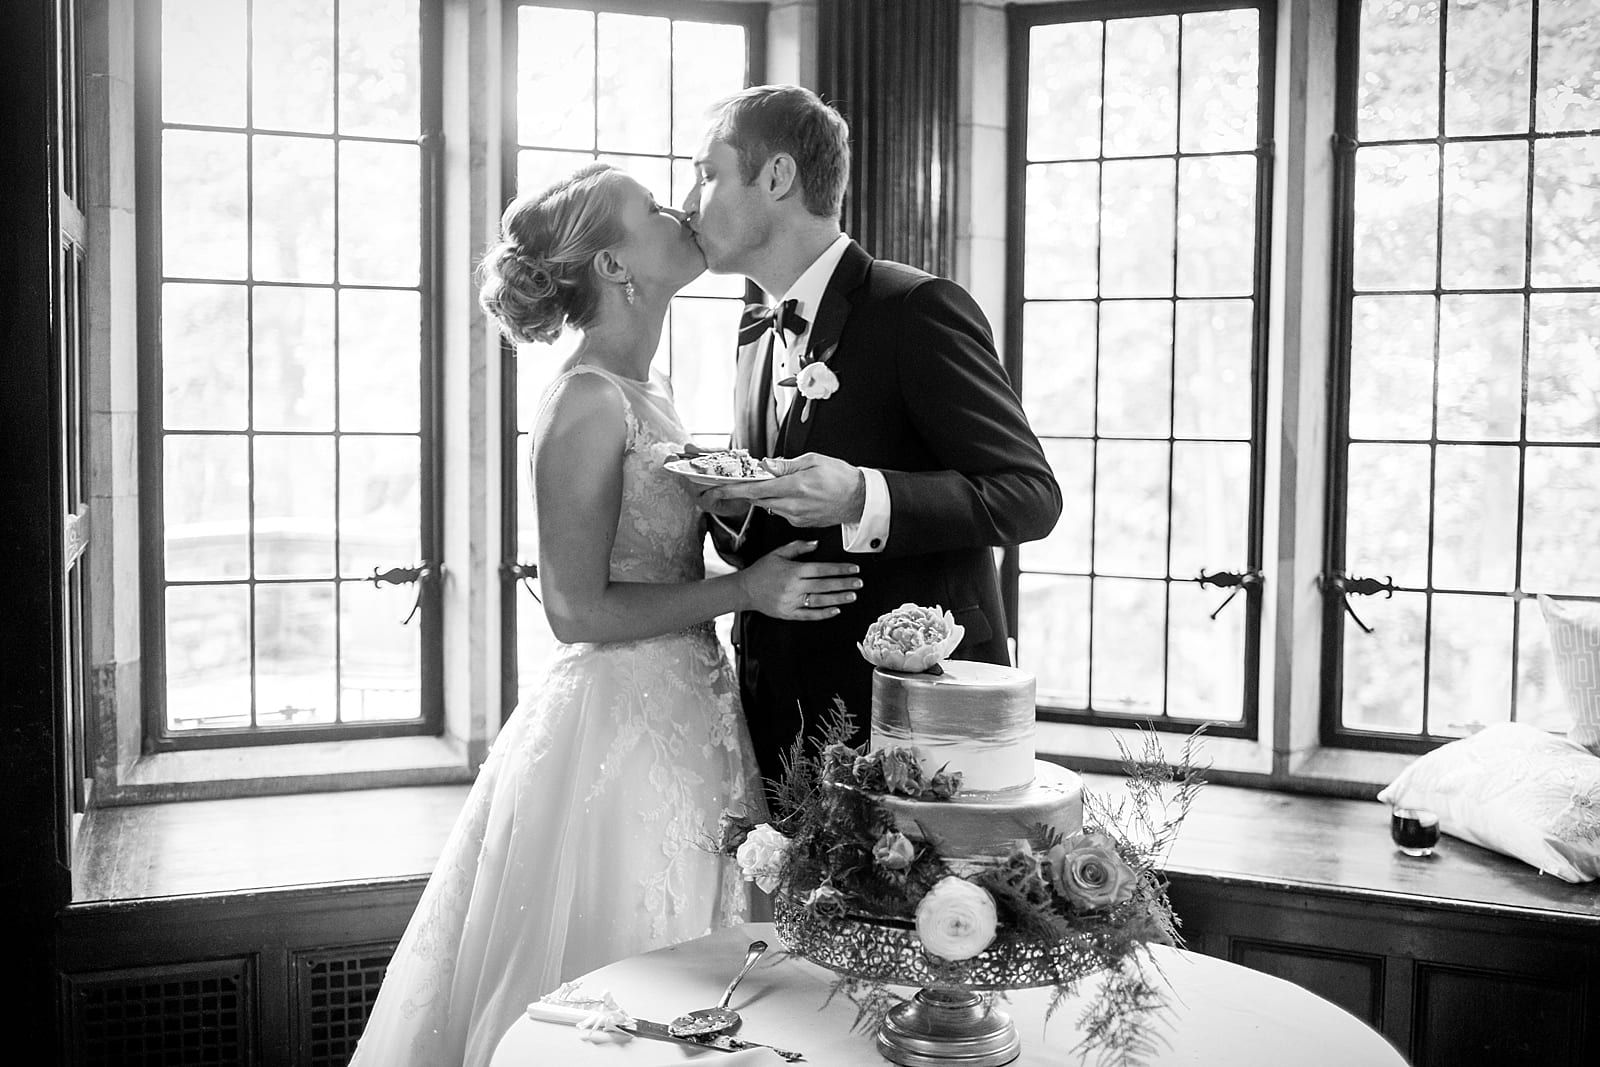 Bride and groom, wedding cake cutting, wedding cake, wedding florals, wedding details, wedding reception,